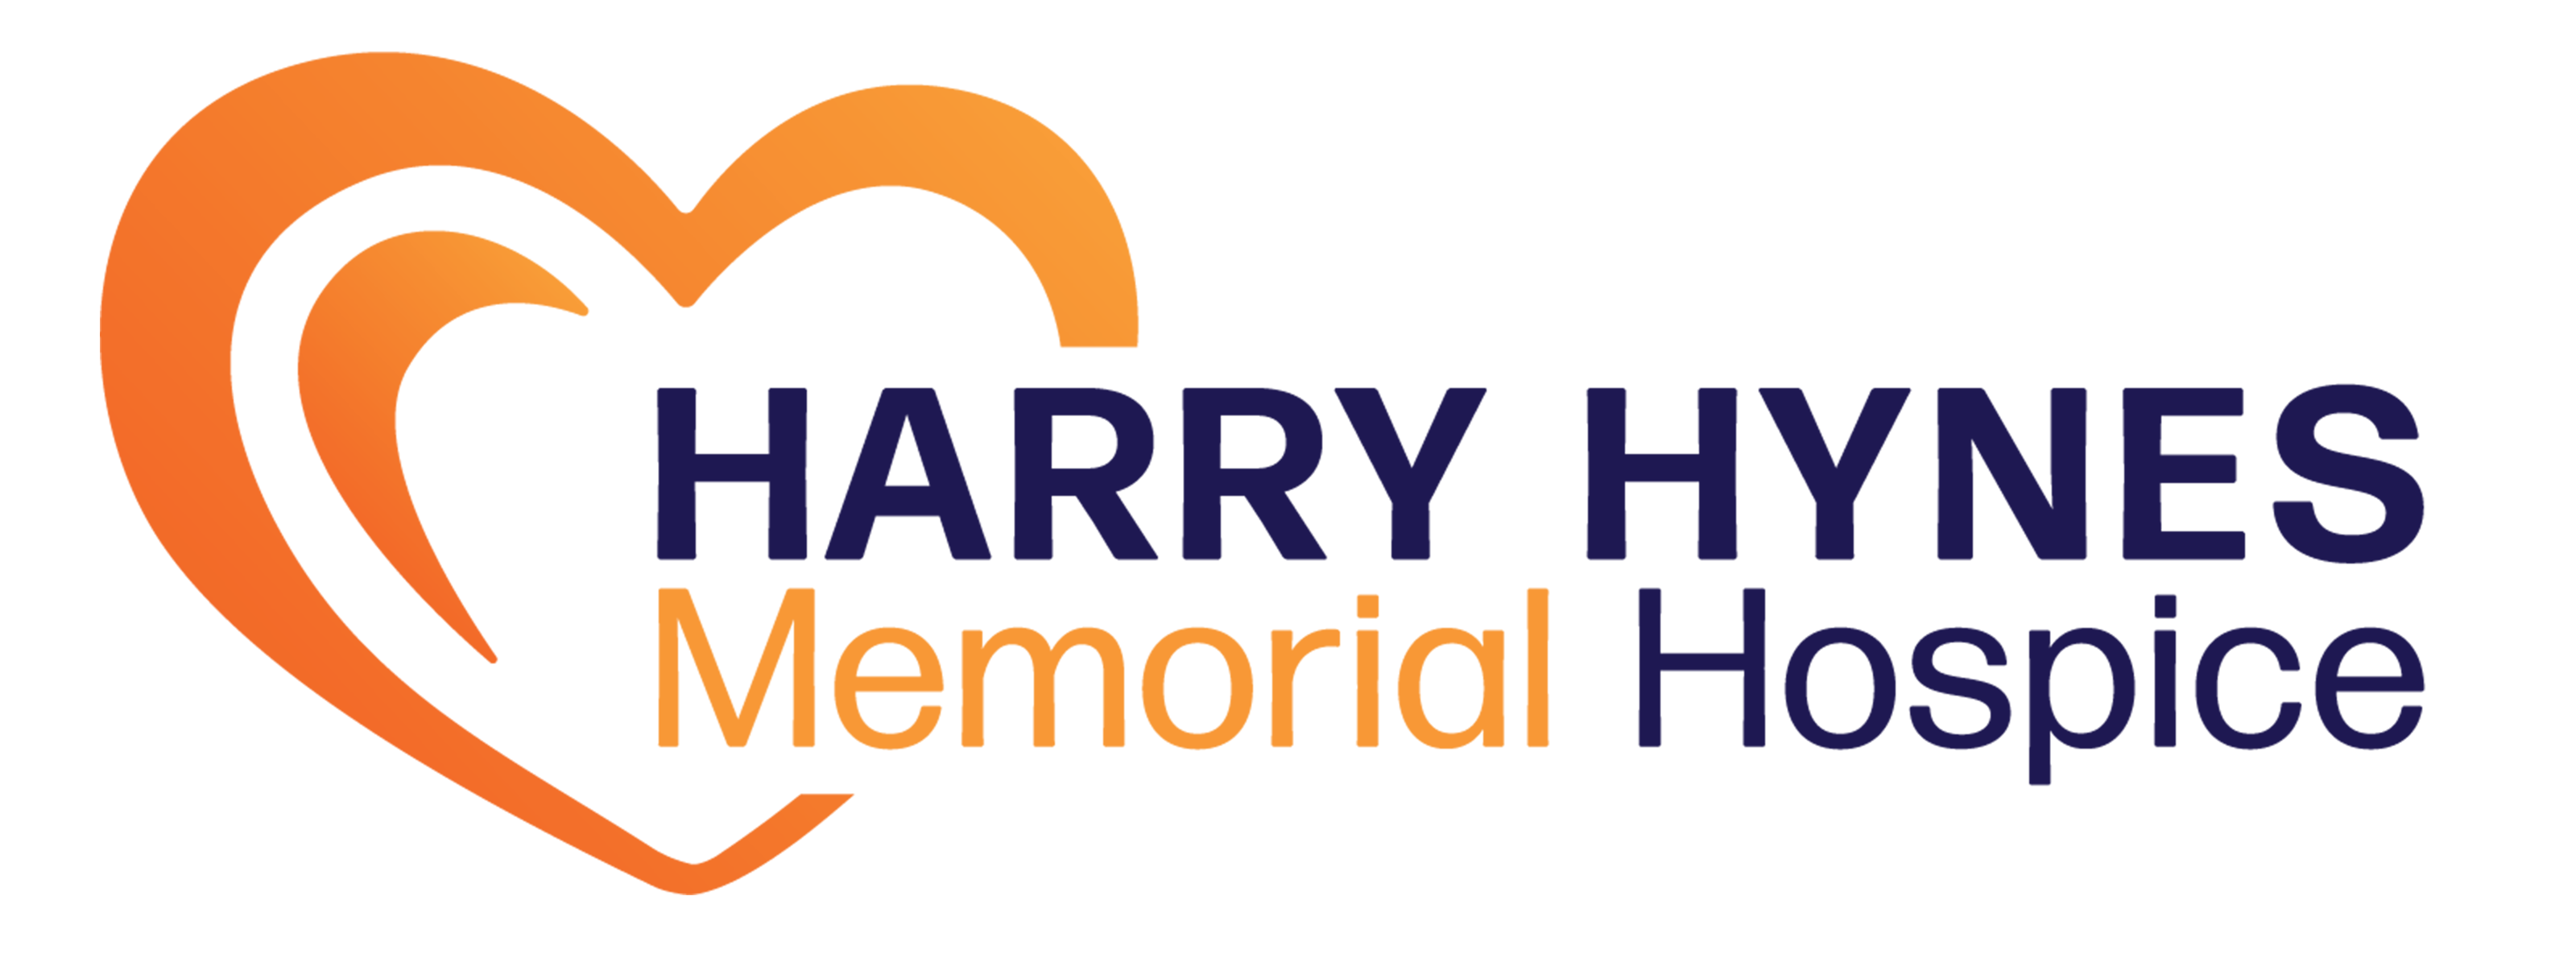 Harry Hynes Hospice